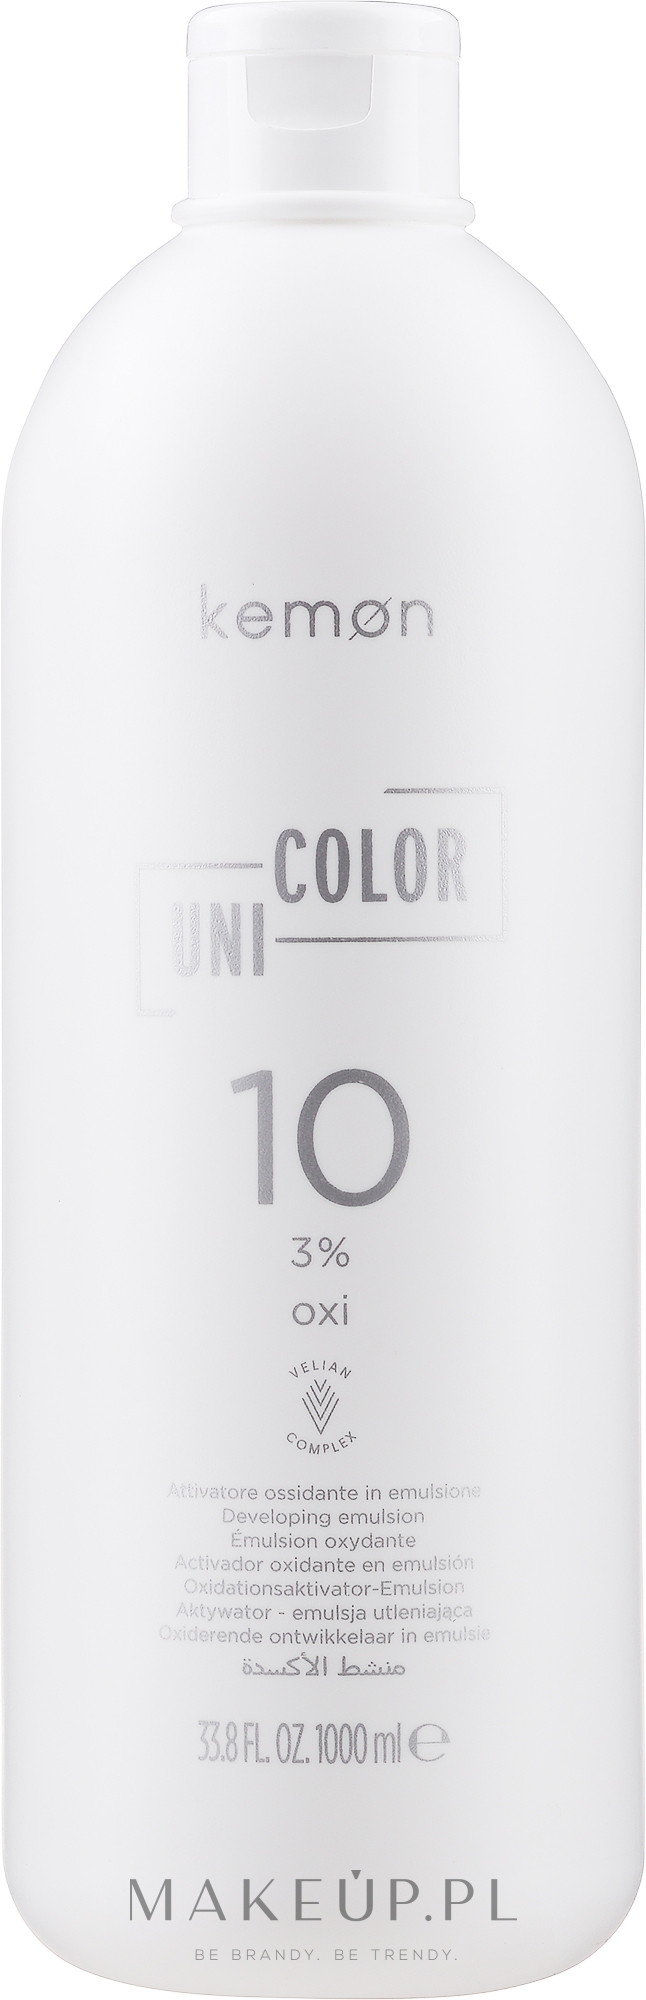 Oksydant uniwersalny do farby 3% - Kemon Uni.Color Oxi — Zdjęcie 1000 ml